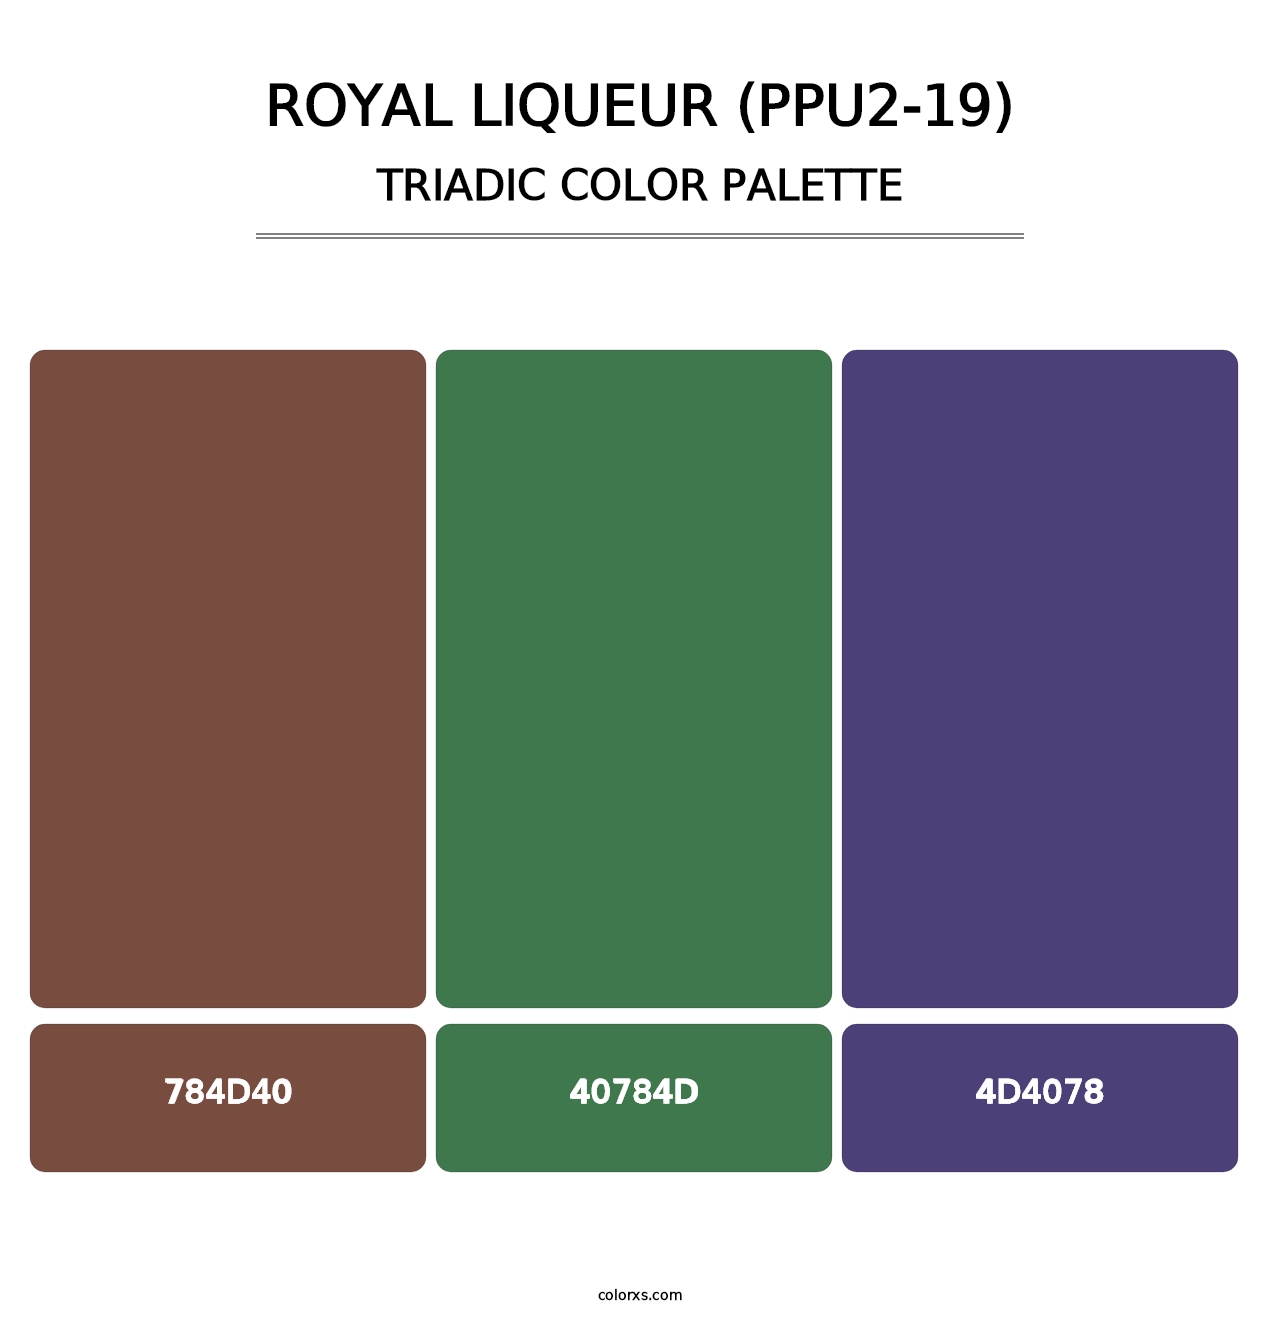 Royal Liqueur (PPU2-19) - Triadic Color Palette